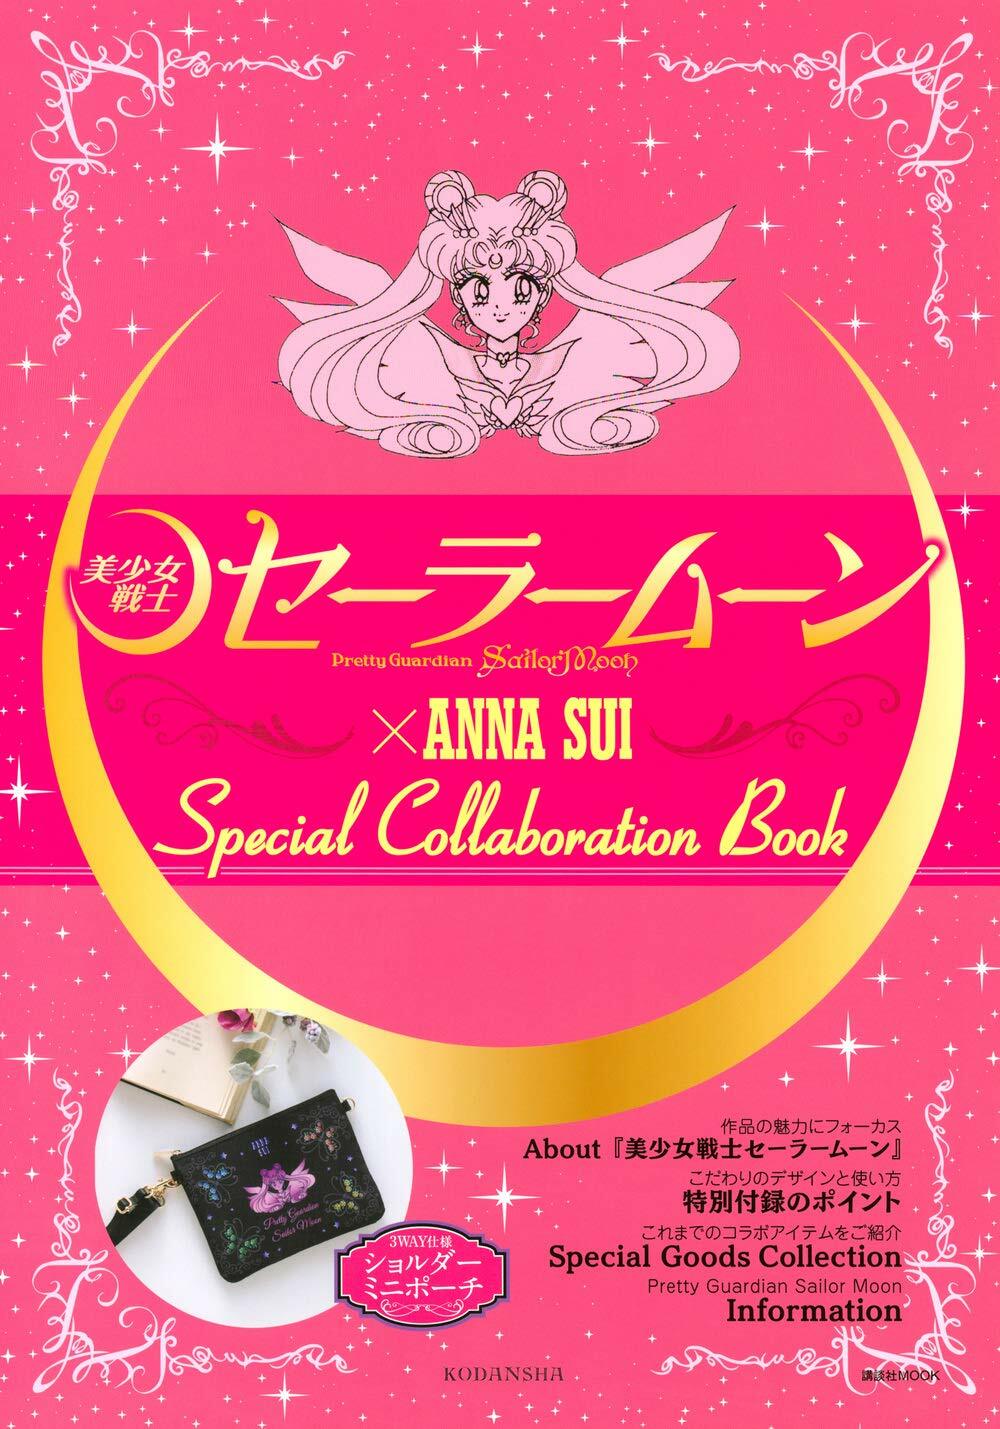 「美少女戰士セ-ラ-ム-ン」×ANNA SUI Special collaboration Book (講談社 MOOK)